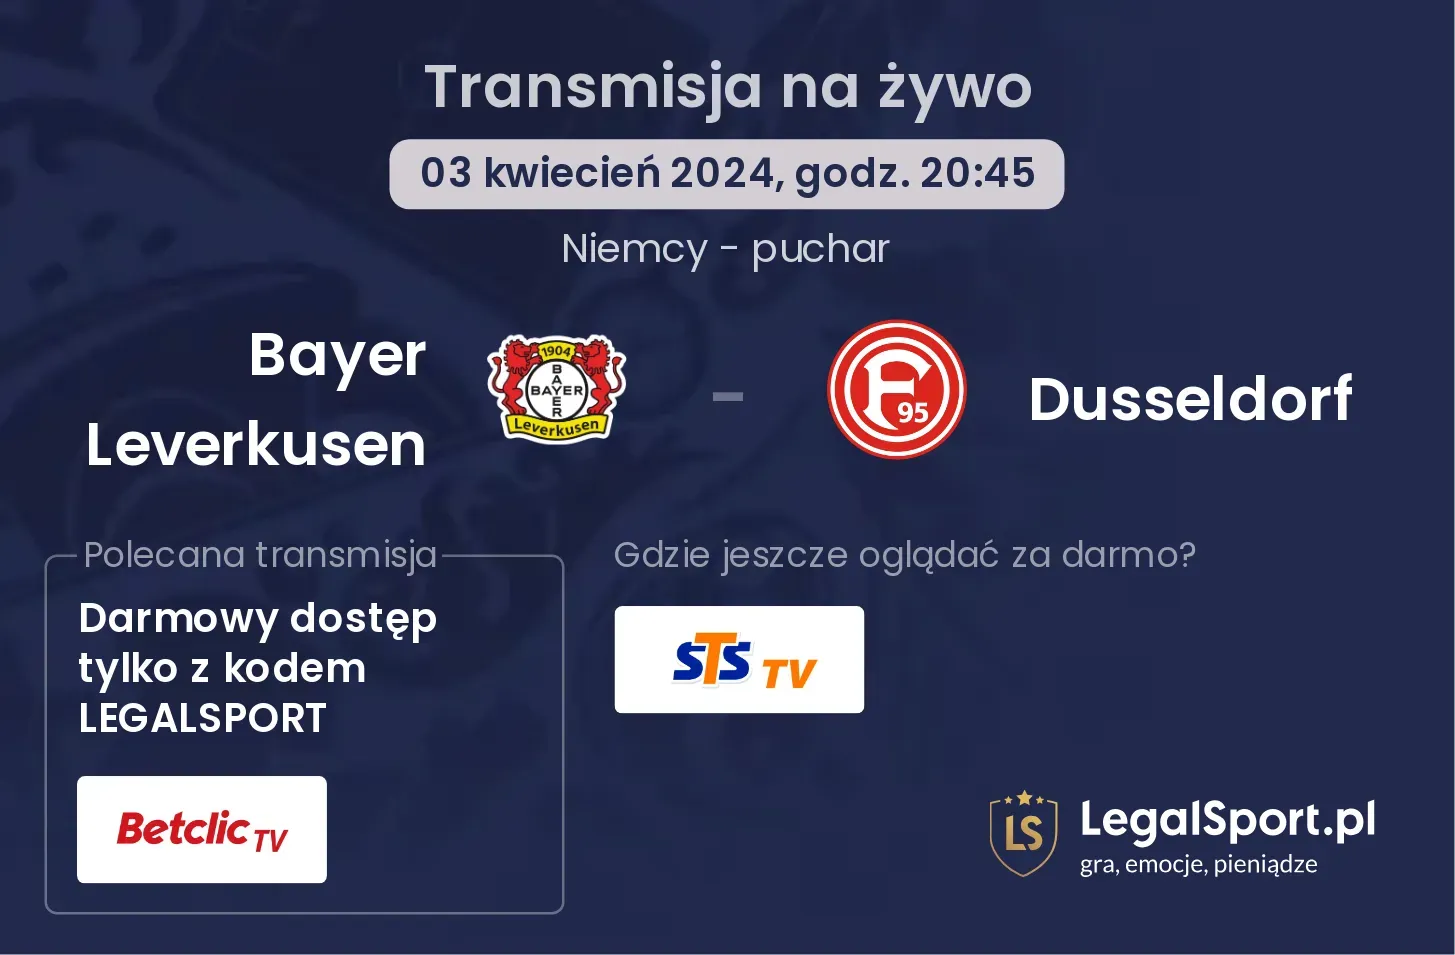 Bayer Leverkusen - Dusseldorf $s